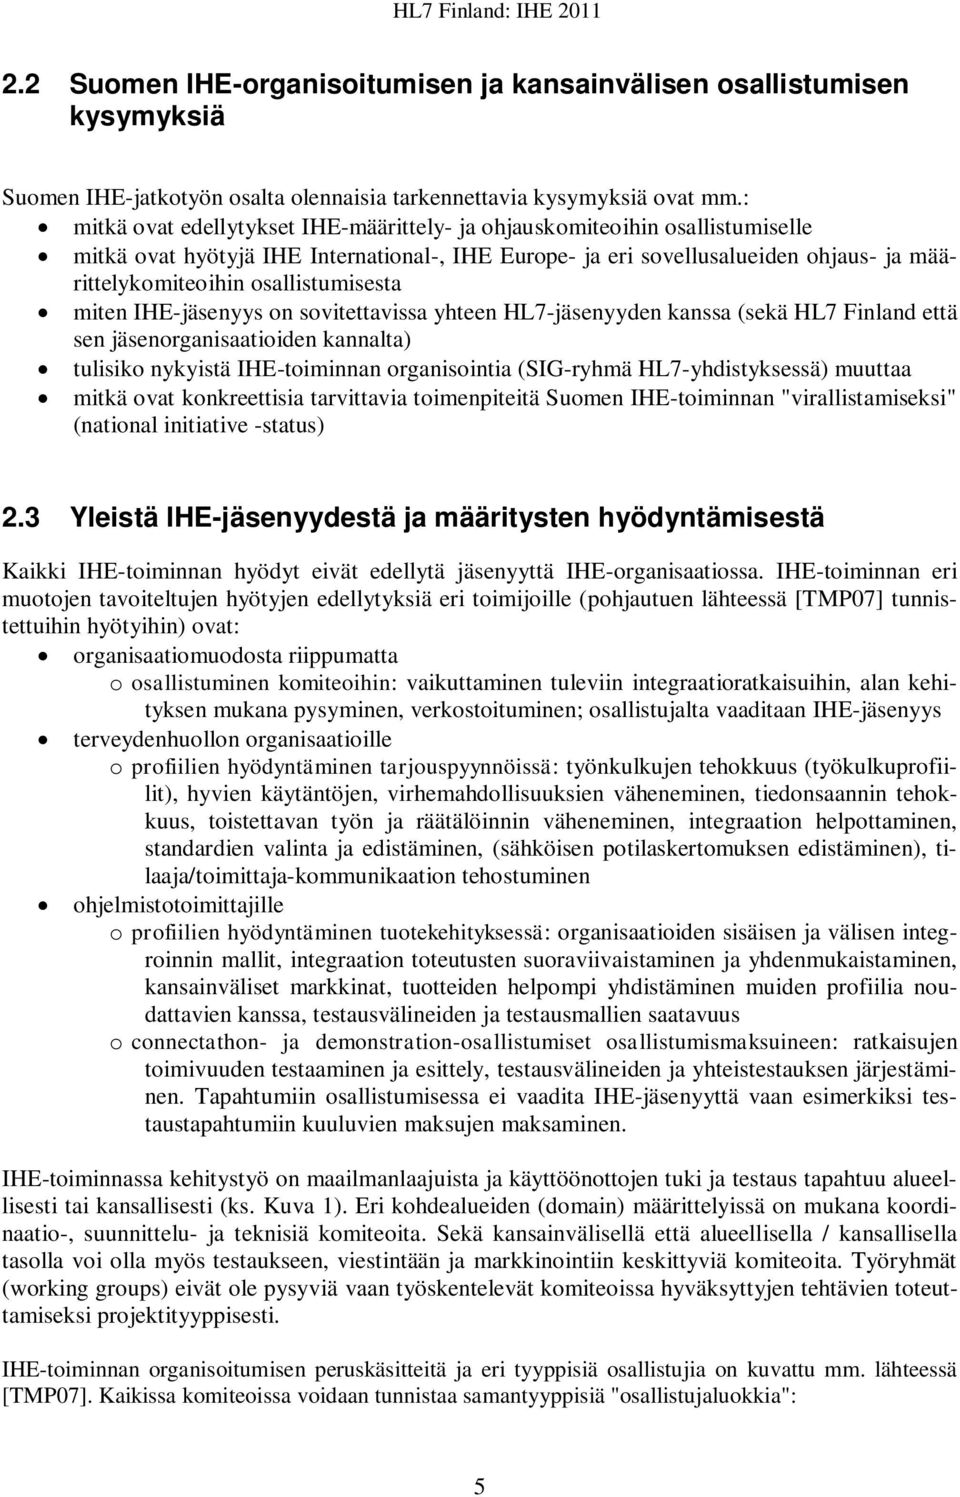 osallistumisesta miten IHE-jäsenyys on sovitettavissa yhteen HL7-jäsenyyden kanssa (sekä HL7 Finland että sen jäsenorganisaatioiden kannalta) tulisiko nykyistä IHE-toiminnan organisointia (SIG-ryhmä